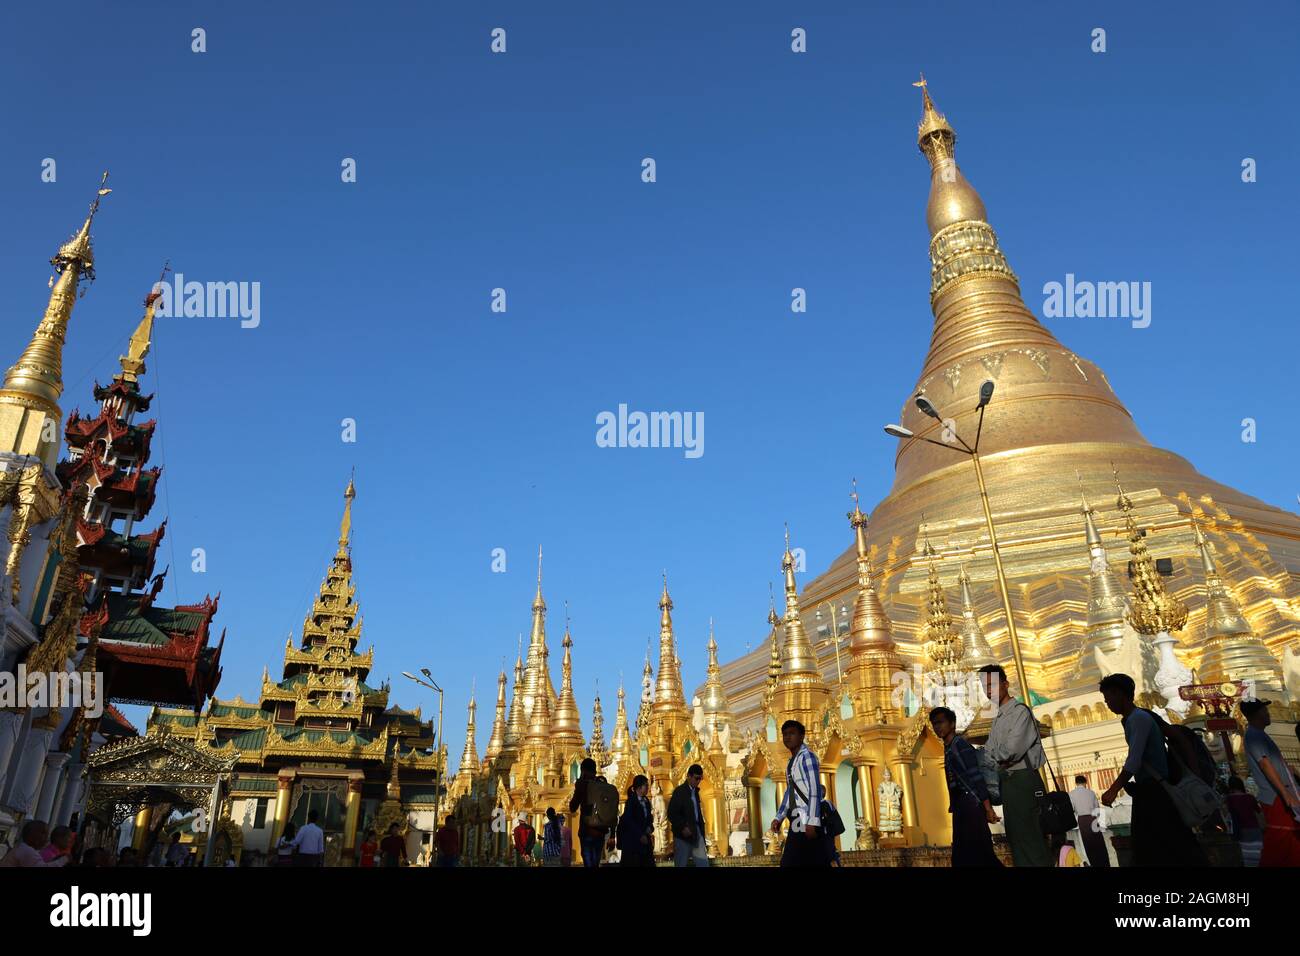 YANGON/MYANMAR - 26th Aug, 2019 : Shwe Dagon Pagoda, Yangon, Myanmar. Stock Photo